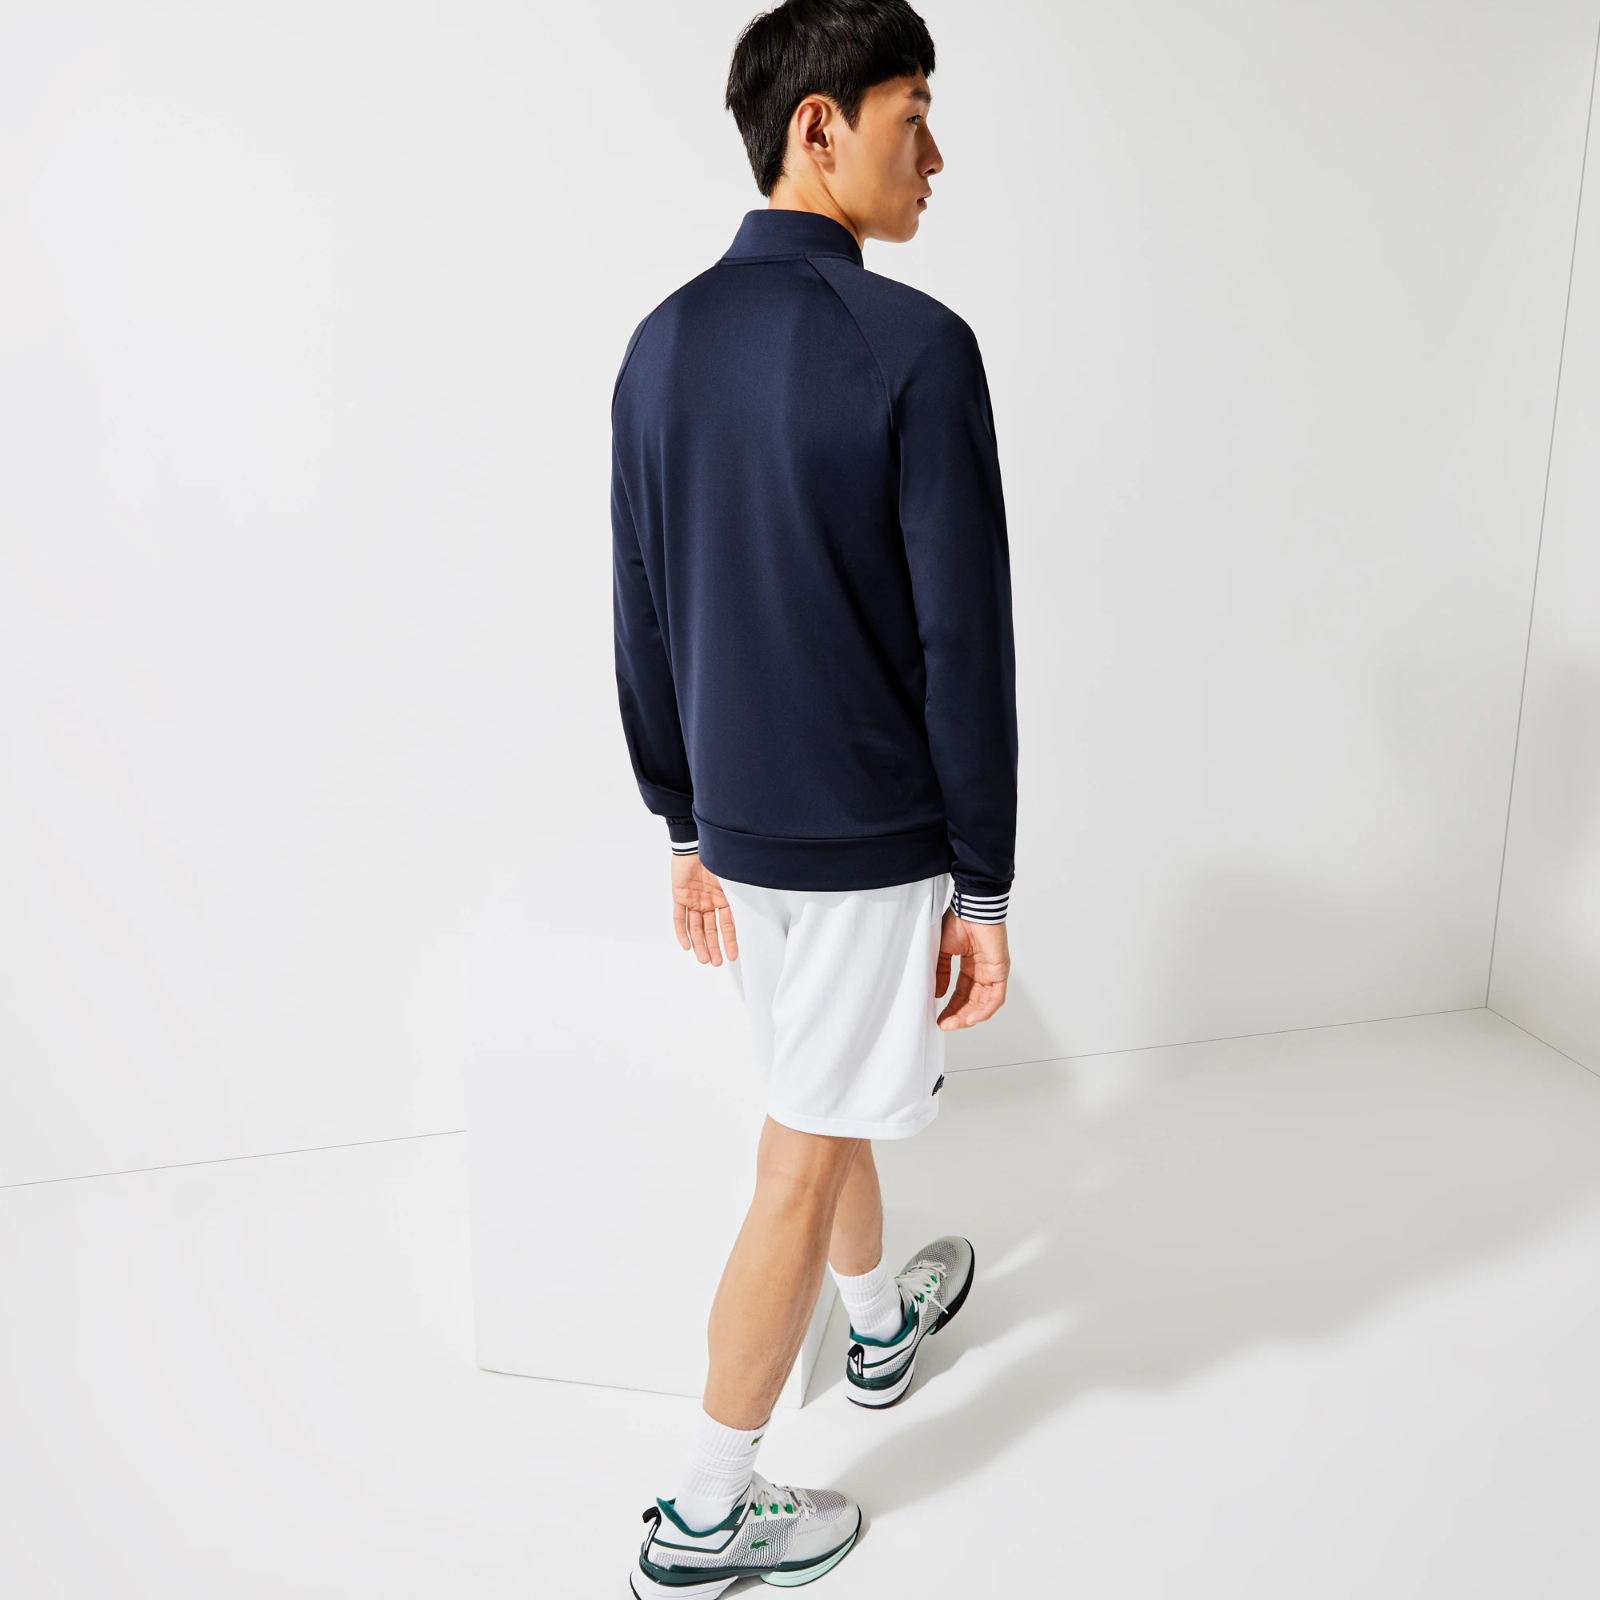 Men’s SPORT Technical Zip Sweatshirt SH6974-51